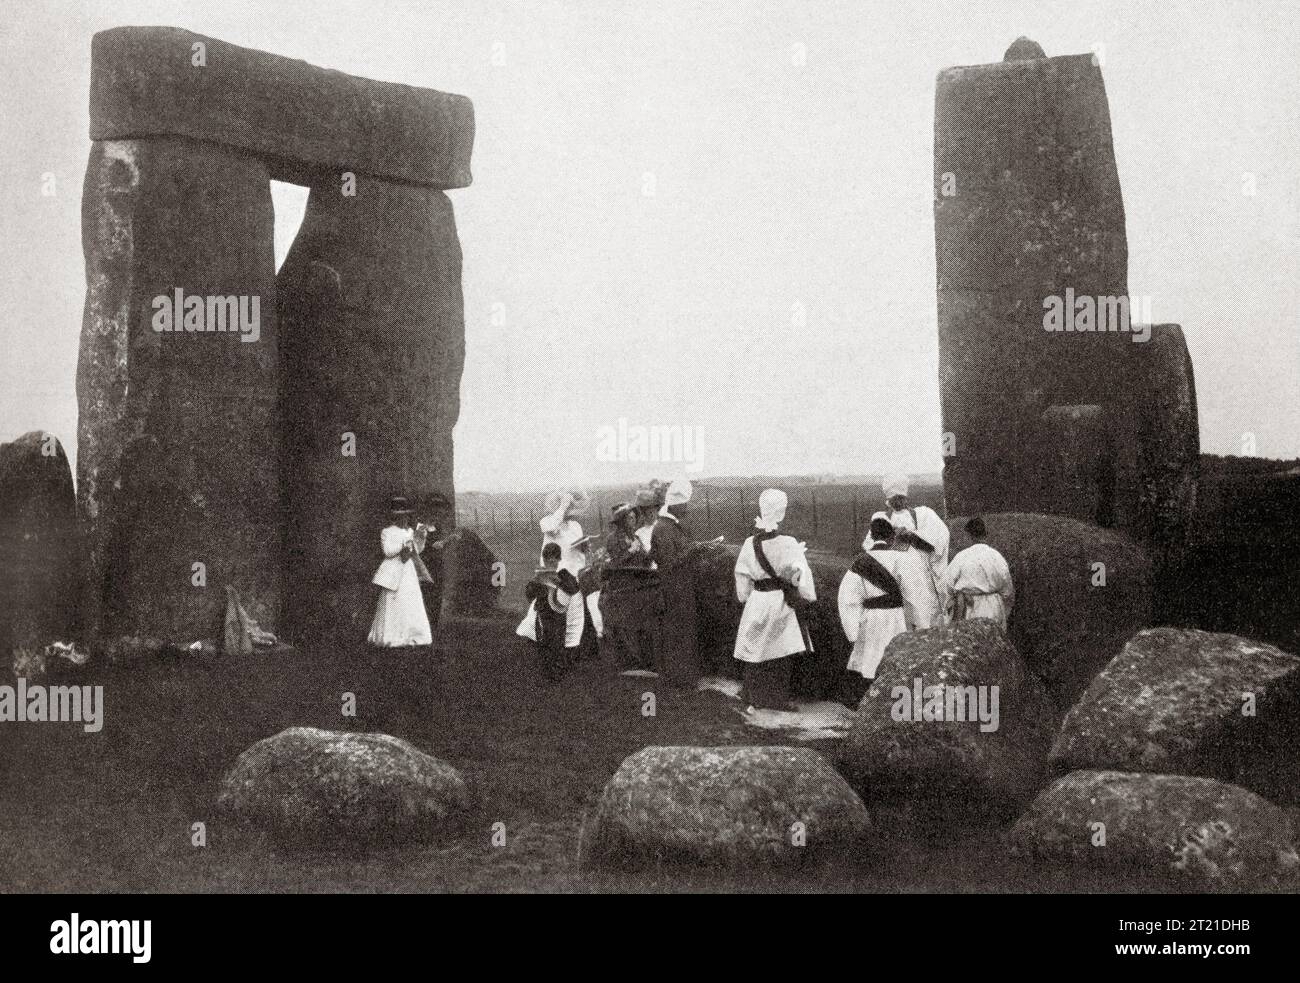 Les fidèles du soleil pratiquant leurs rites à Stonehenge, Salisbury Plain, Angleterre au début du 20e siècle. De Mundo Grafico, publié en 1912. Banque D'Images